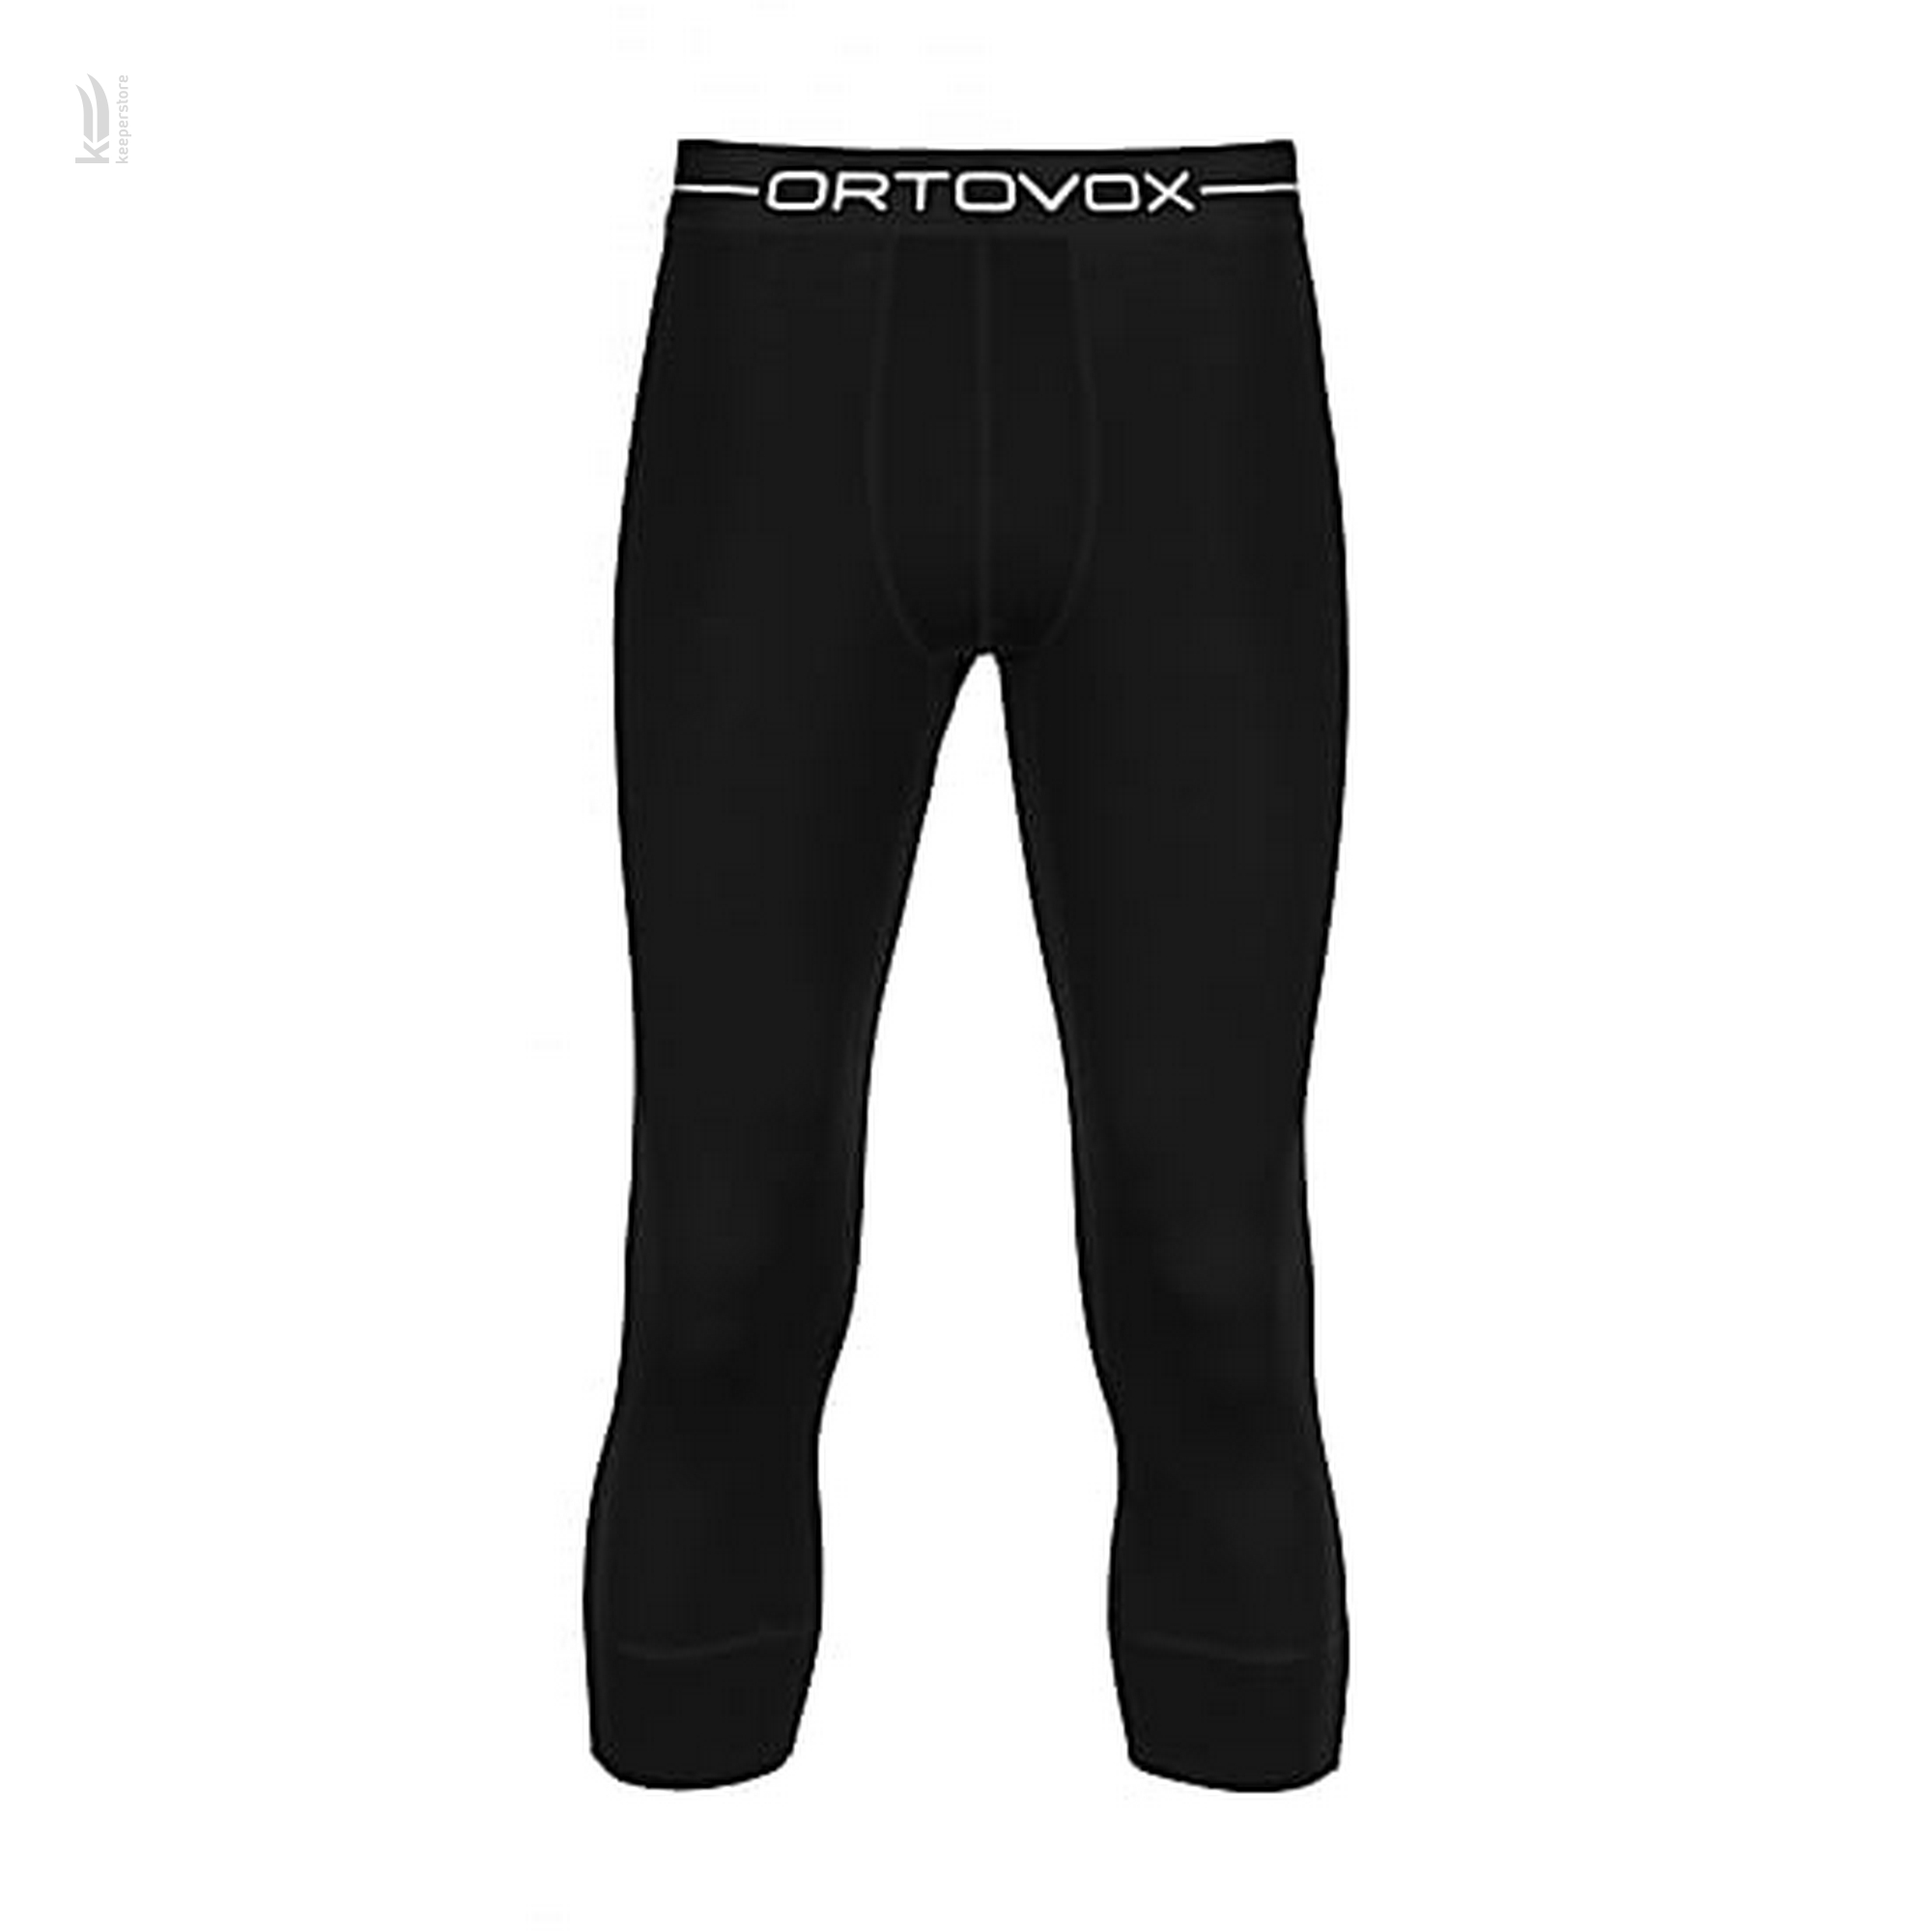 Ortovox 185 Short Pants Black Raven M (XL)